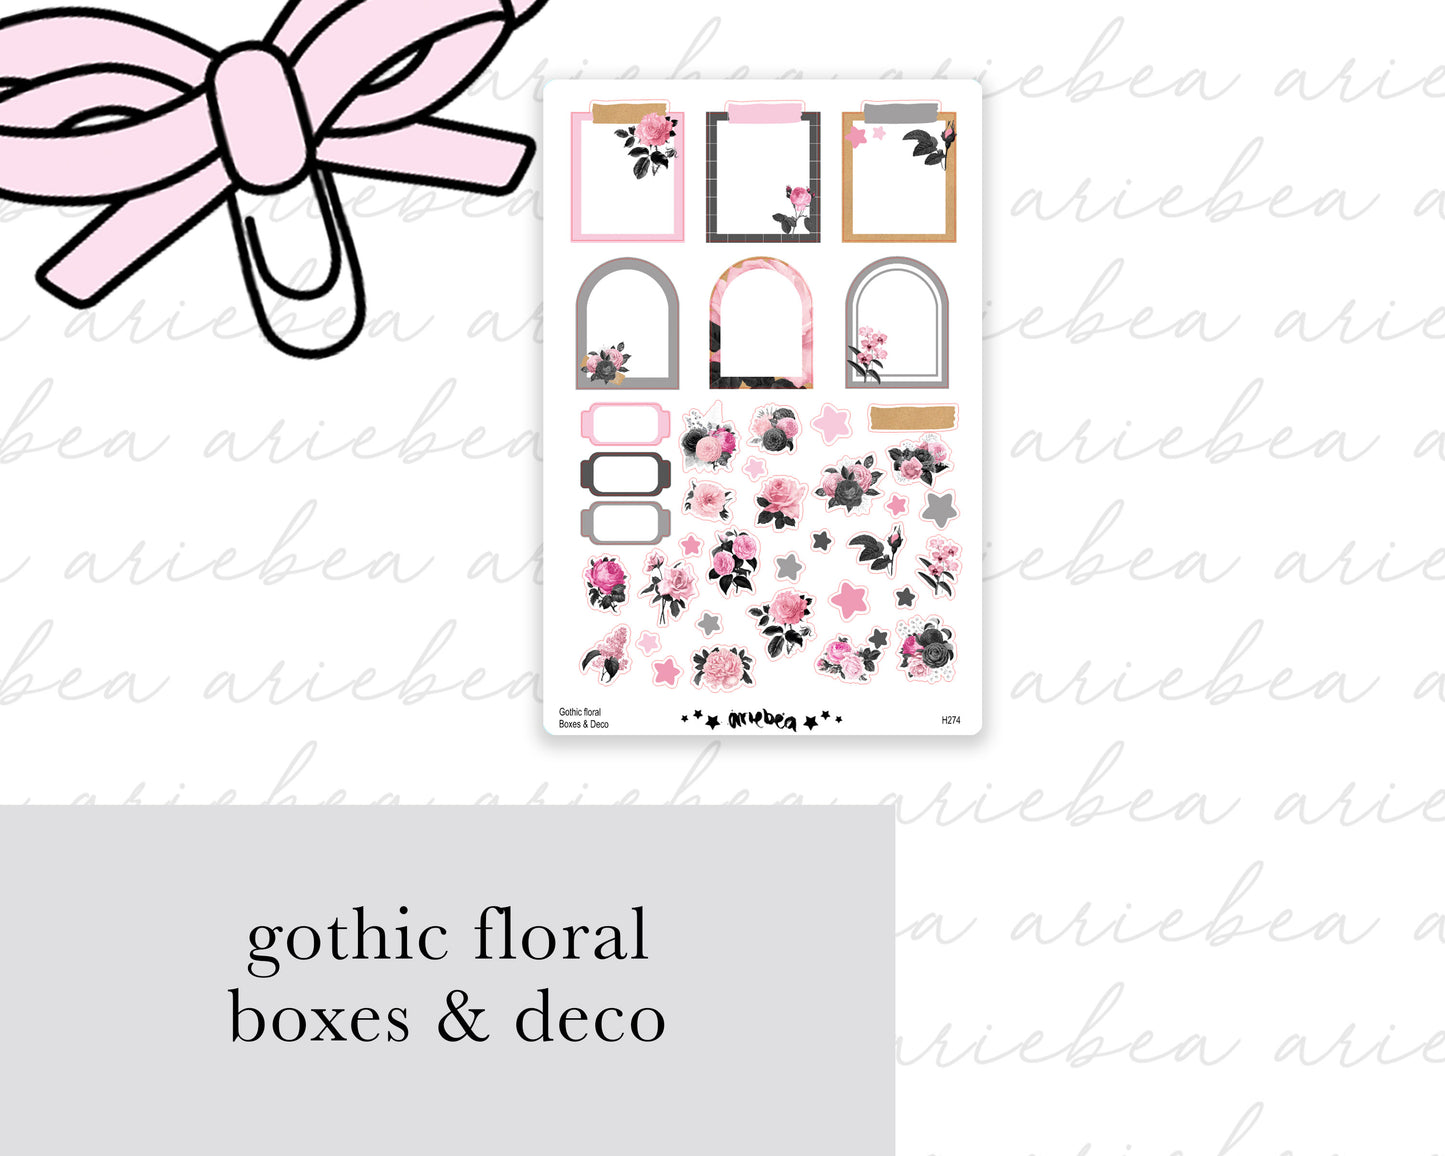 Gothic Floral Boxes & Deco